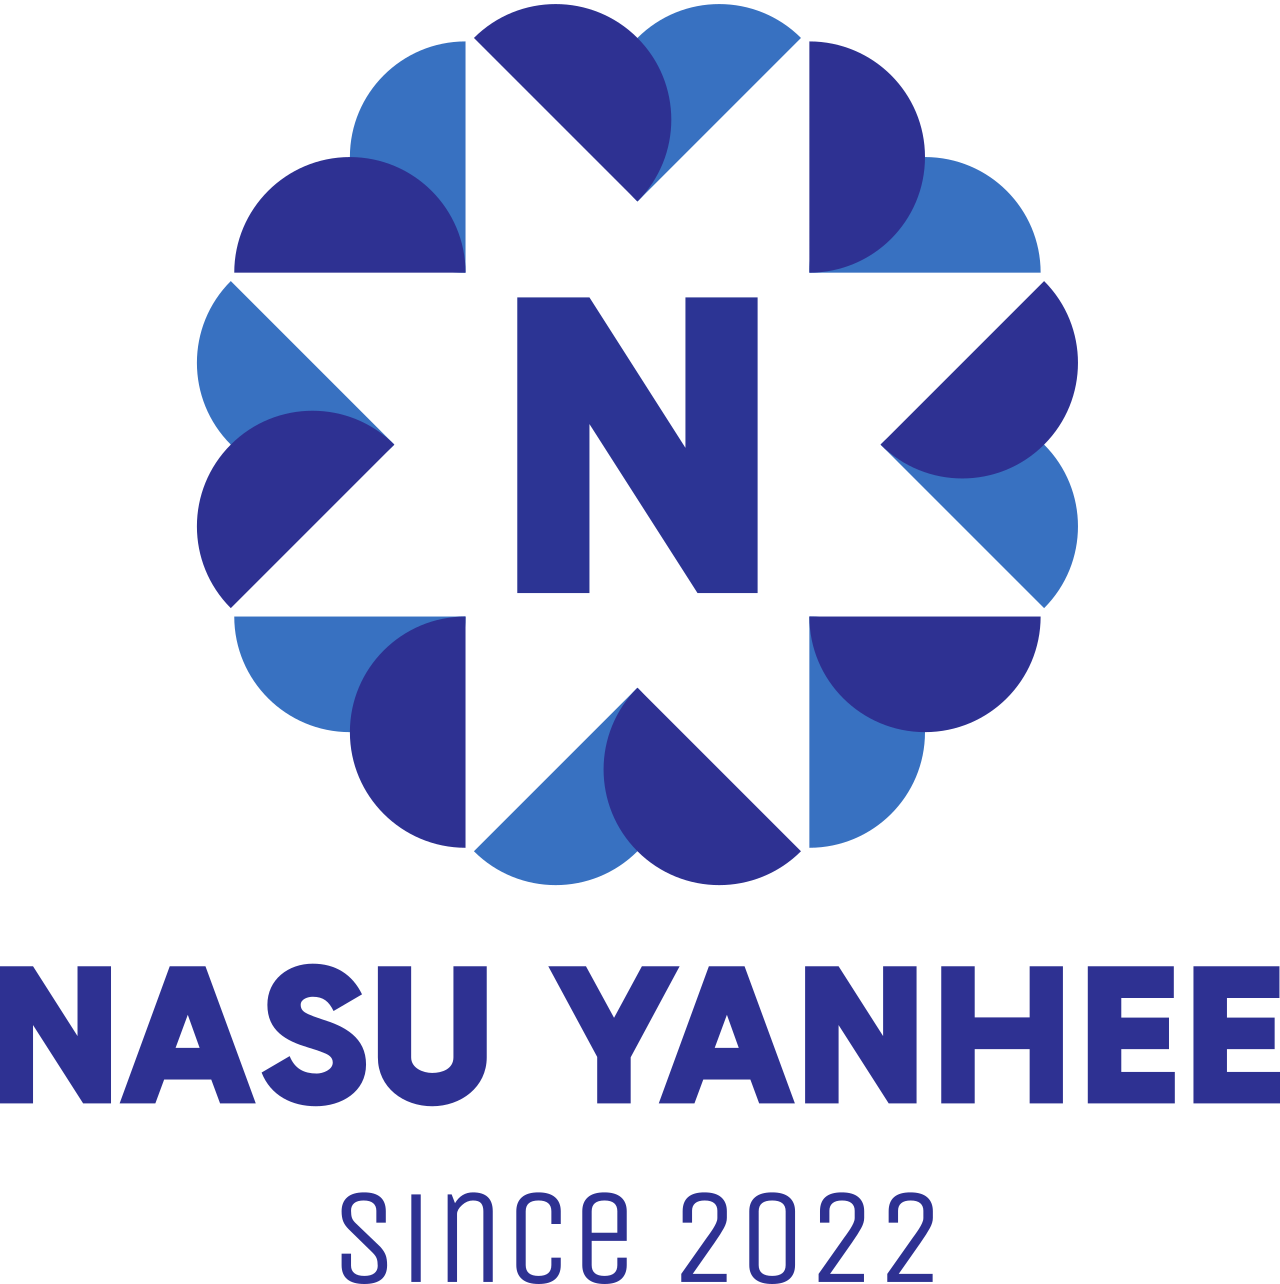 NaSu Yanhee's logo